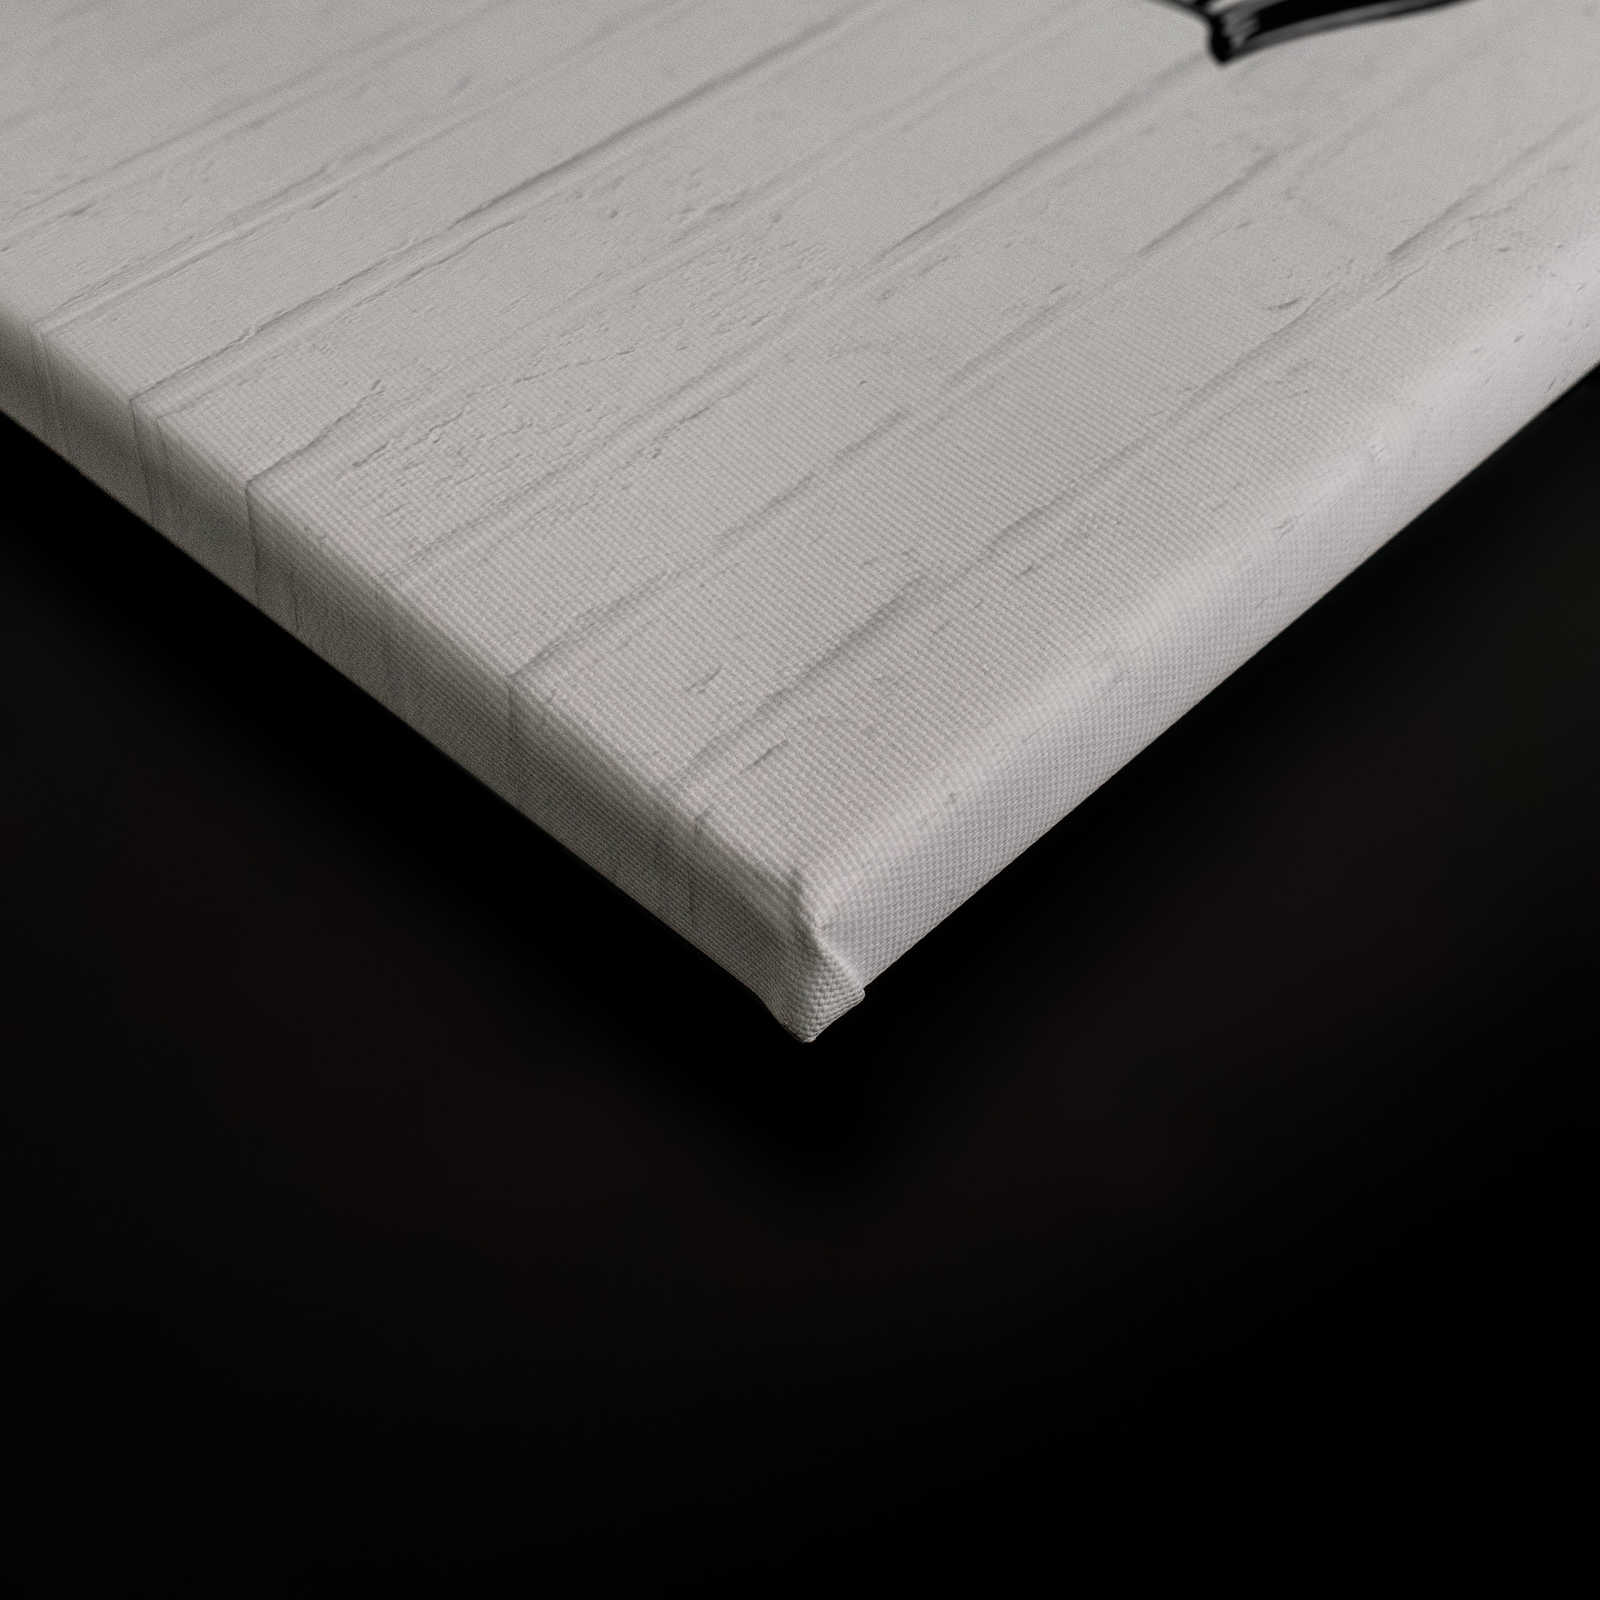             Lienzo Blanco y Negro Pintura Pared de Piedra con Patrón Gráfico - 0,90 m x 0,60 m
        